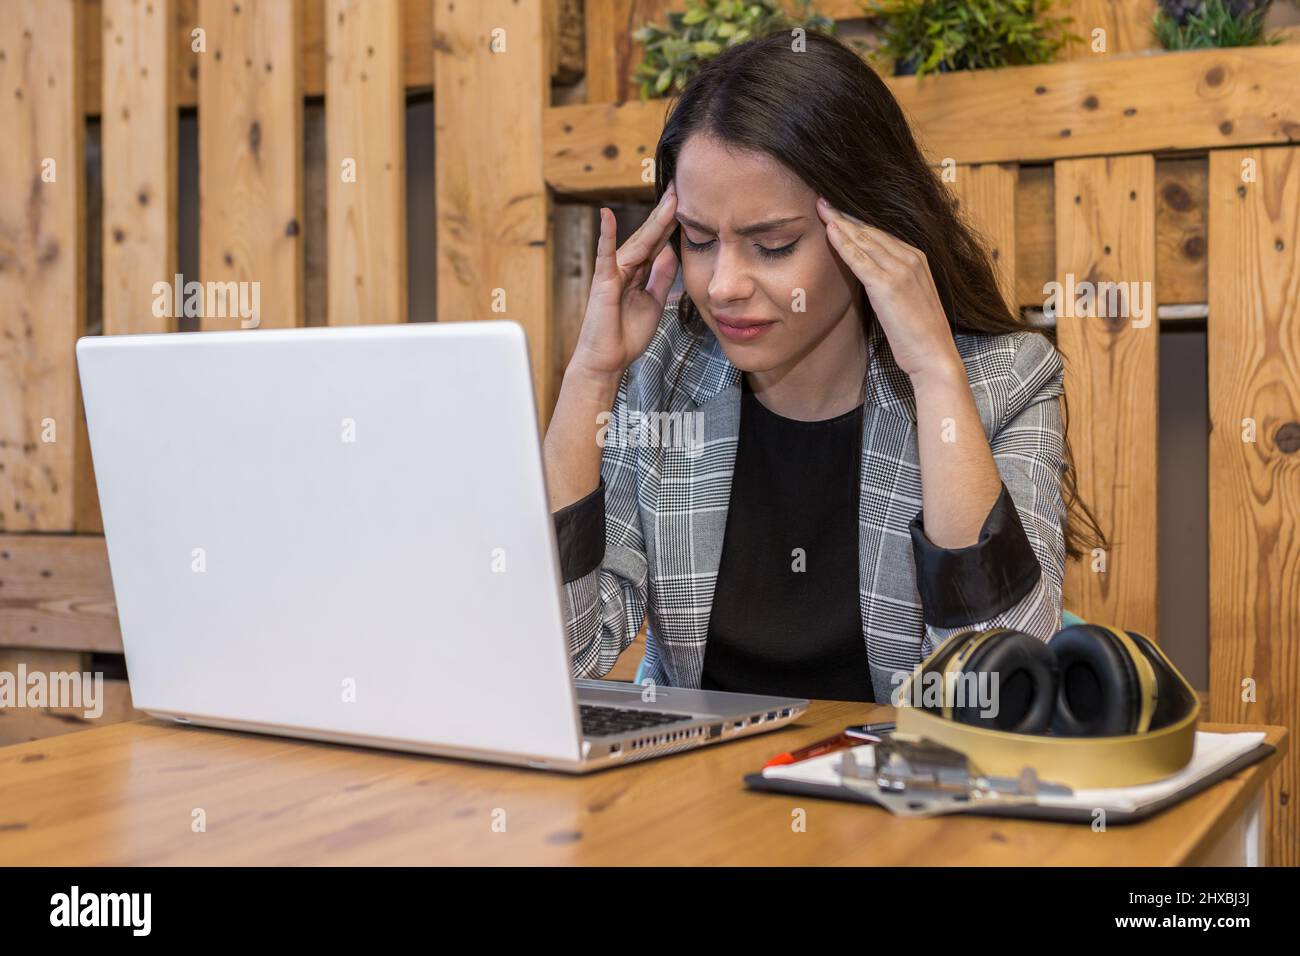 Müde junge Fernarbeiterin, die Kopfschmerzen hatte, während sie im Café an einem Netbook mit Clipboard und kabellosen Kopfhörern arbeitete Stockfoto